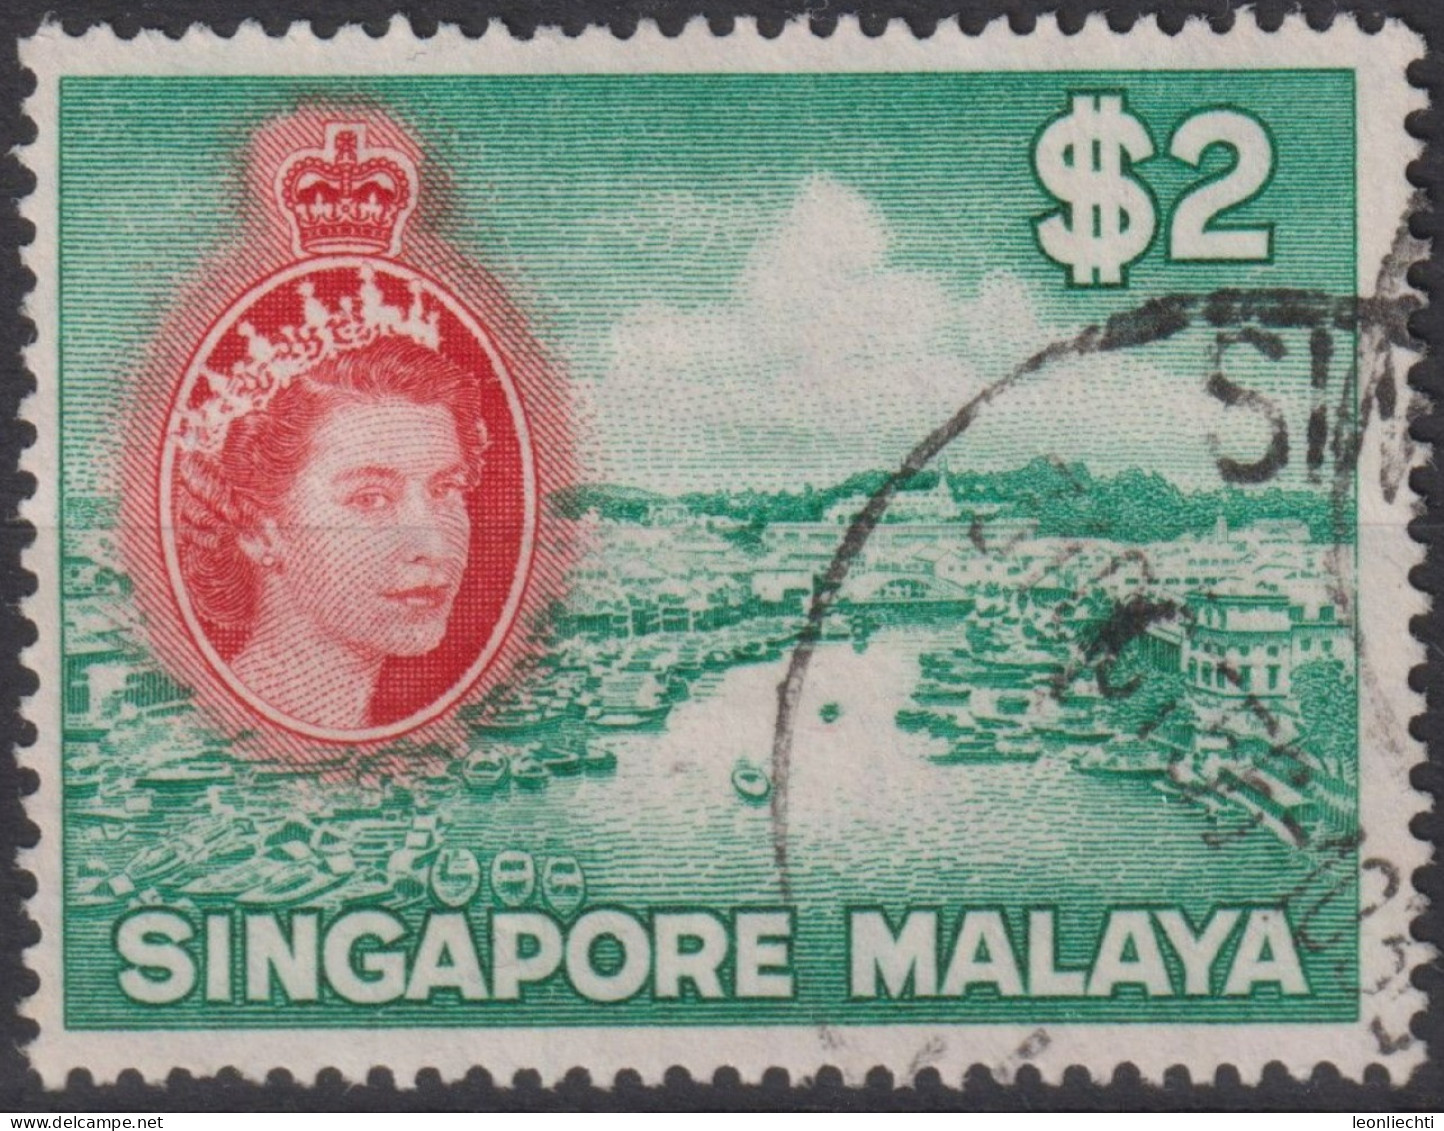 1955  Singapur - Malaya (...-1959) ° Mi:SG 41, Sn:SG 41, Yt:SG 41, Sg:SG 51, Singapore River - Singapur (...-1959)